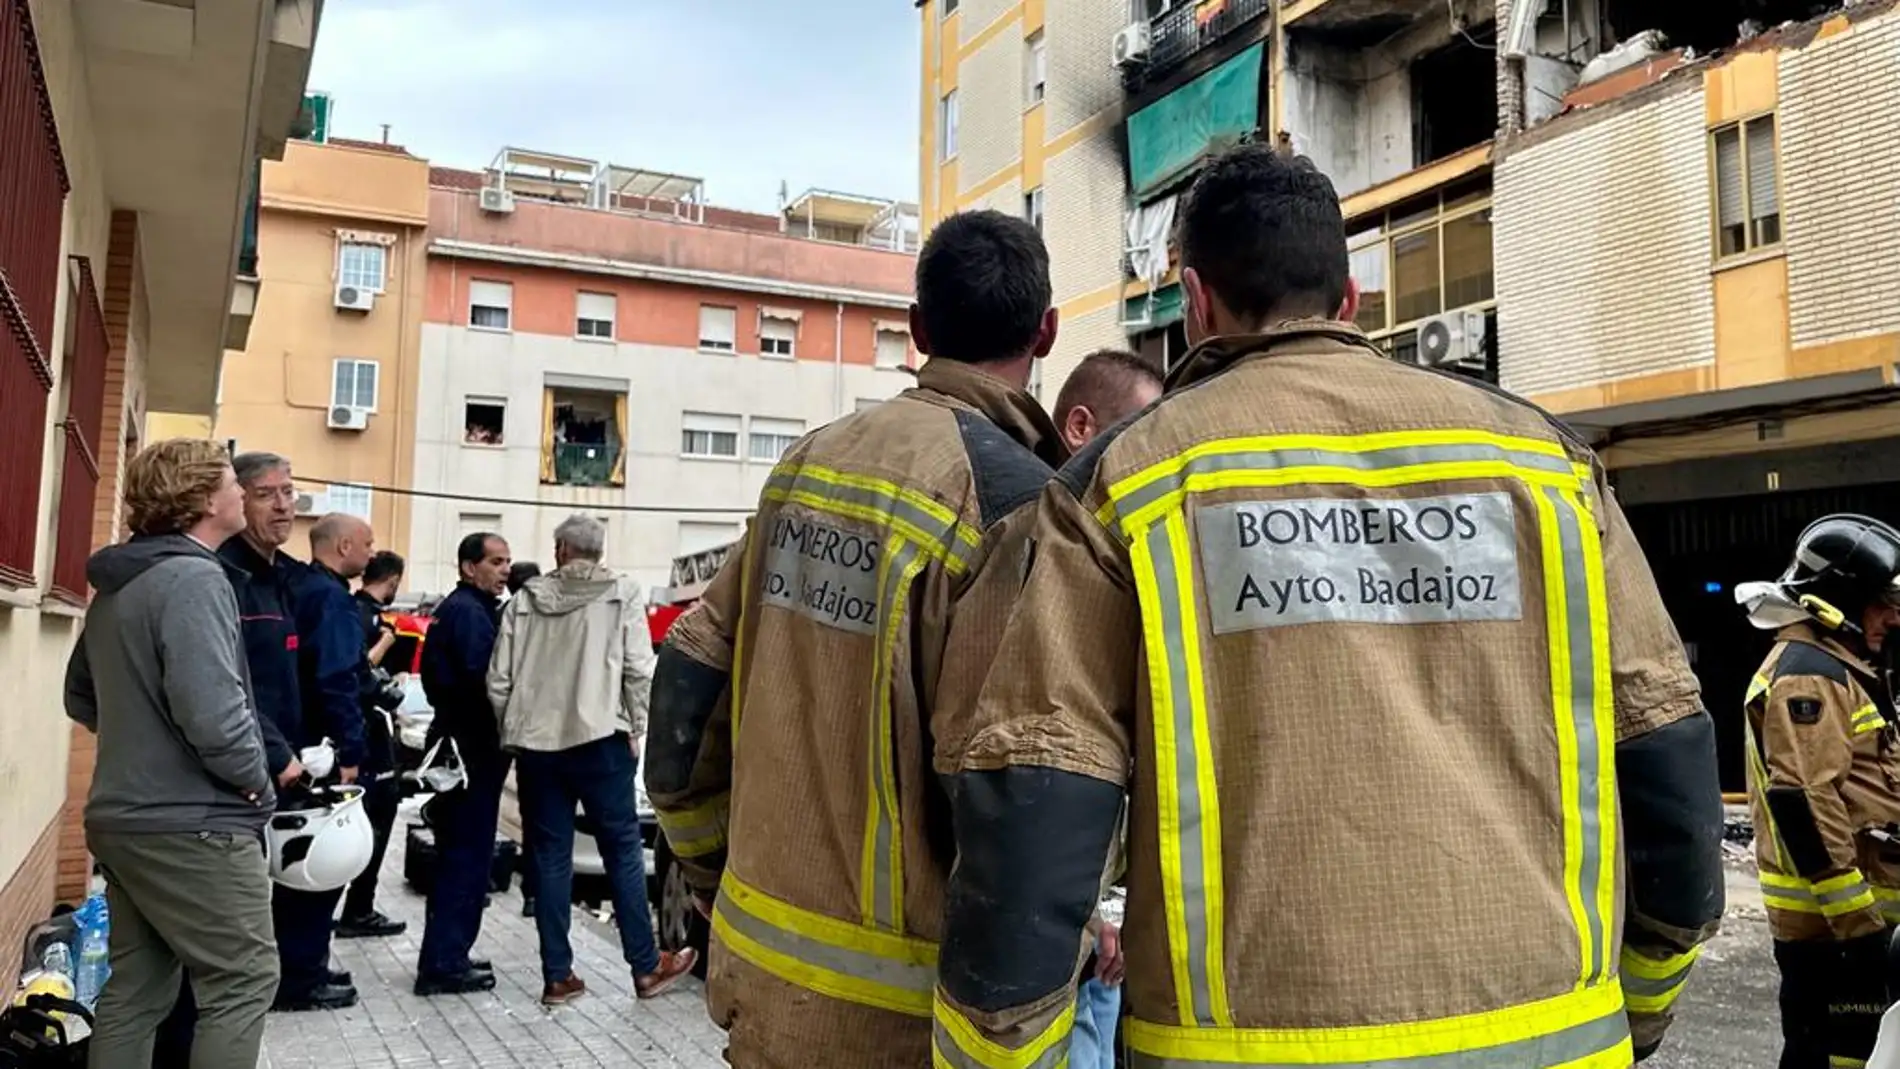 Ignacio Gragera confirma que el edificio donde se ha producido una explosión en Badajoz "en principio" no sufre daños estructurales